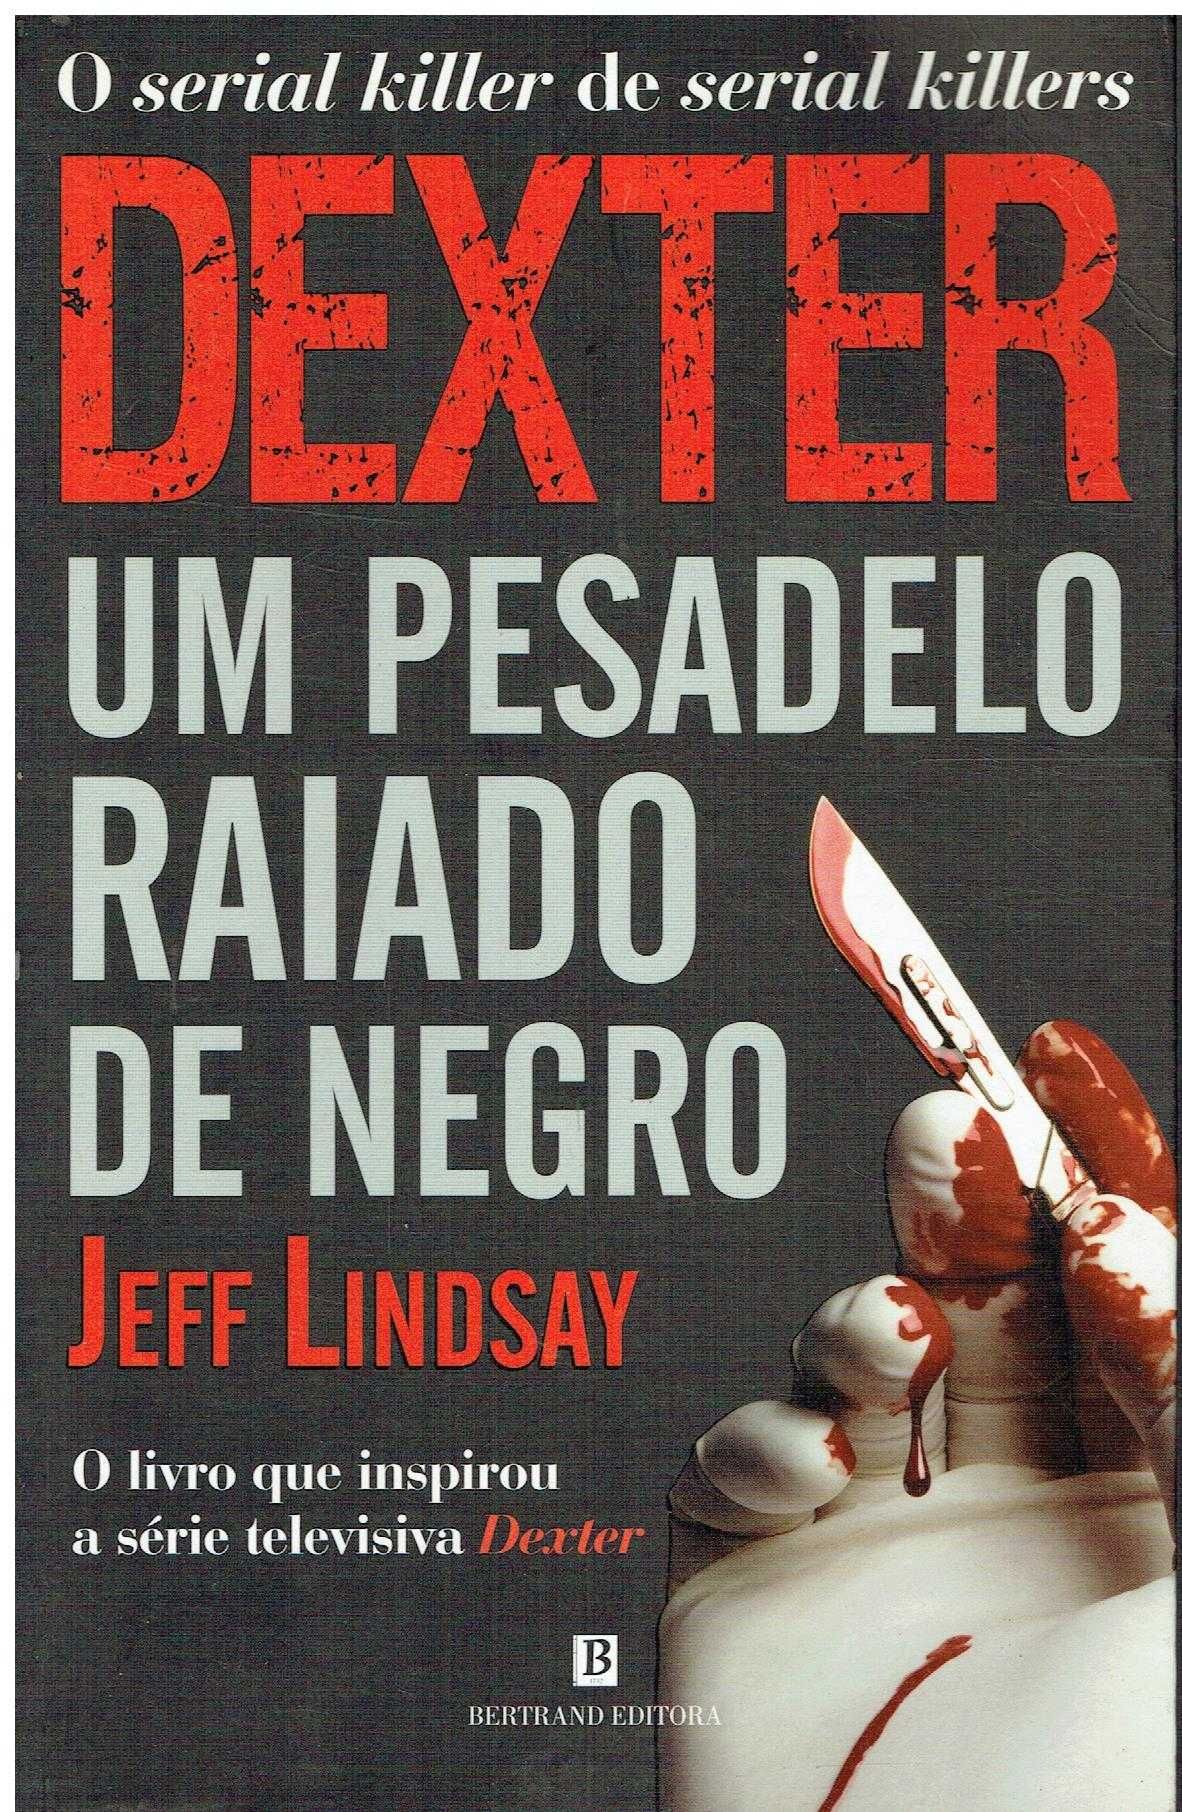 13380

Dexter - Um Pesadelo Raiado de Negro
de Jeff Lindsay